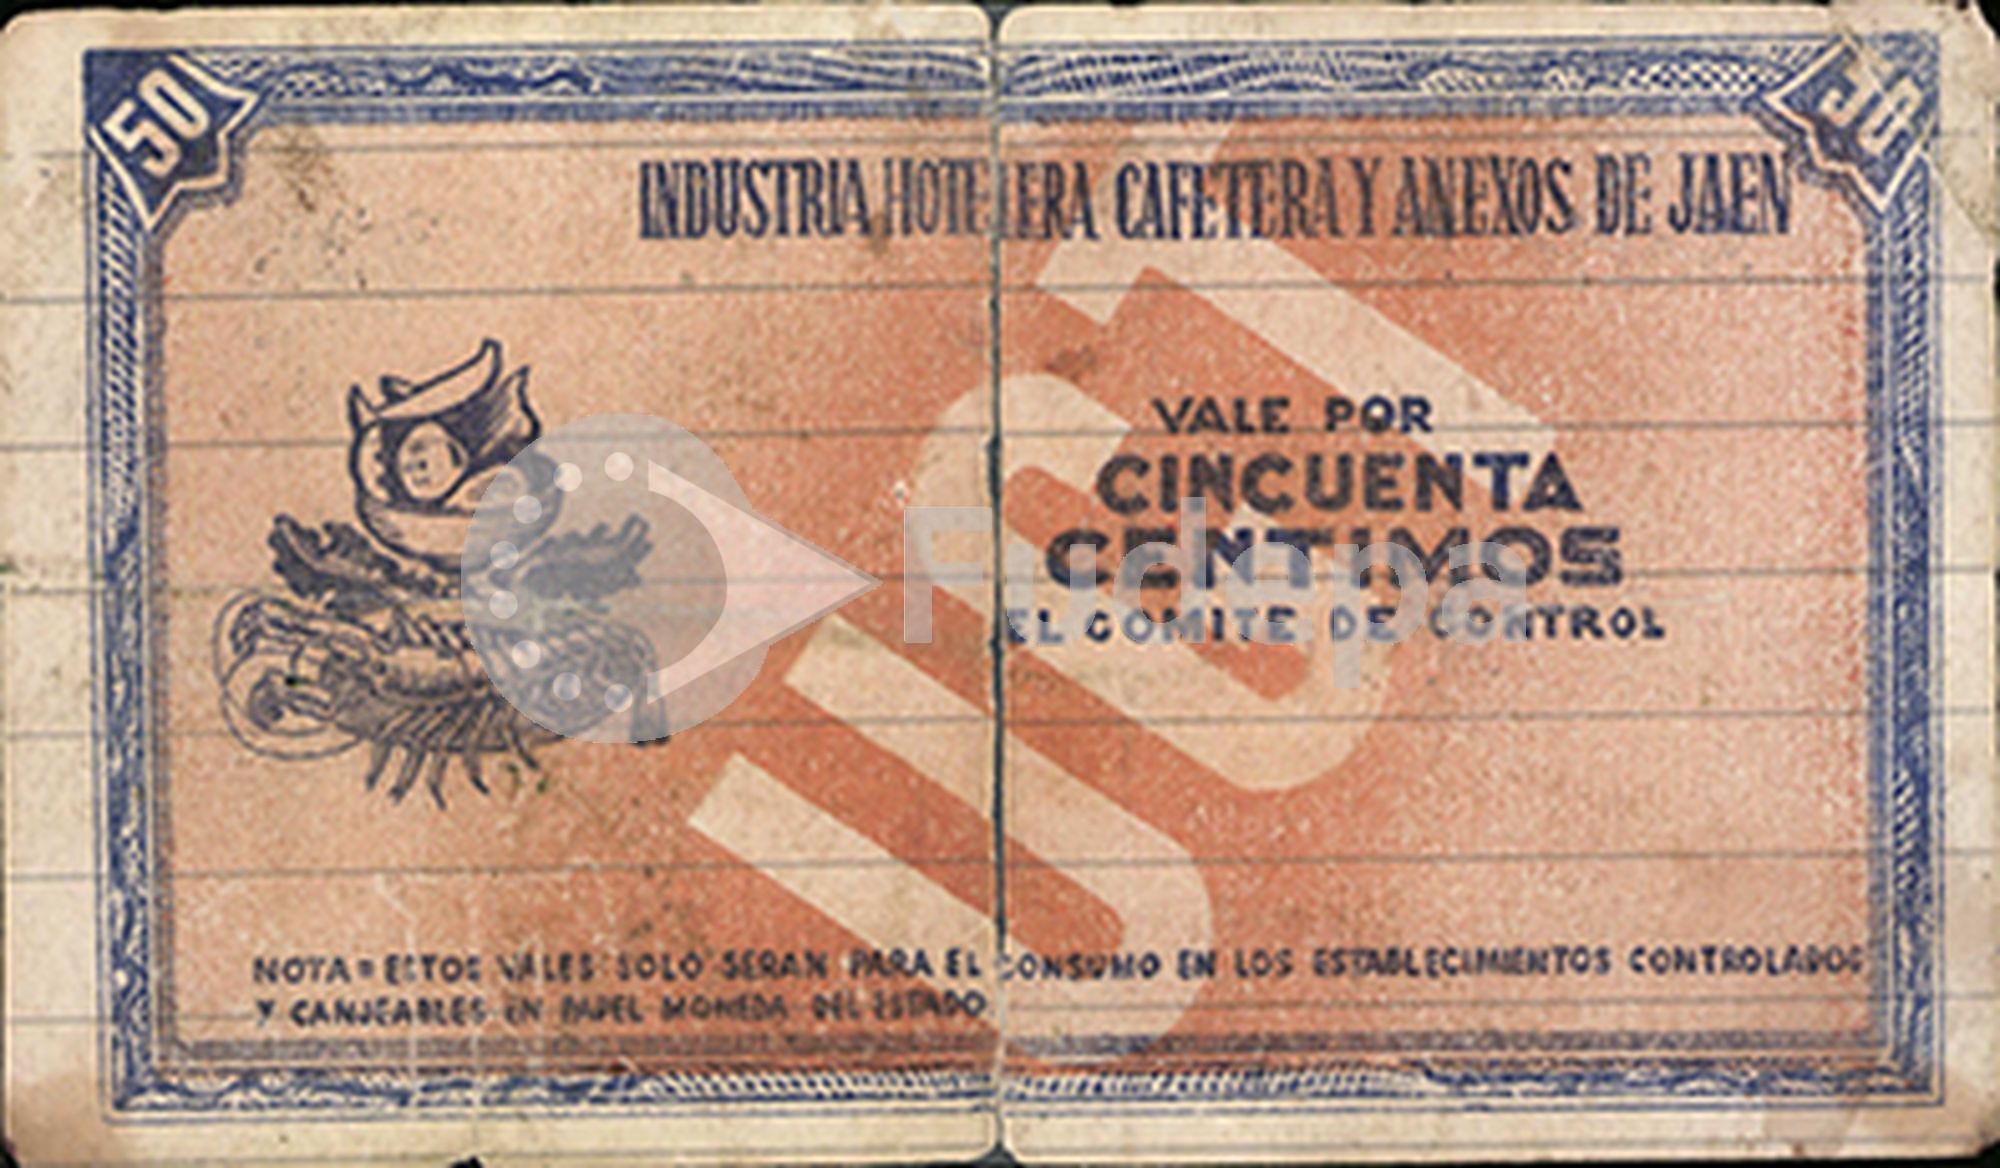 Industria Hotelera, Cafetera y Anexos de Jaén. Vale por 50 céntimos. 1937. Donado por José Manuel Arévalo Badía. FUDEPA. AHUGT-A: C_12876/25 [Recto]